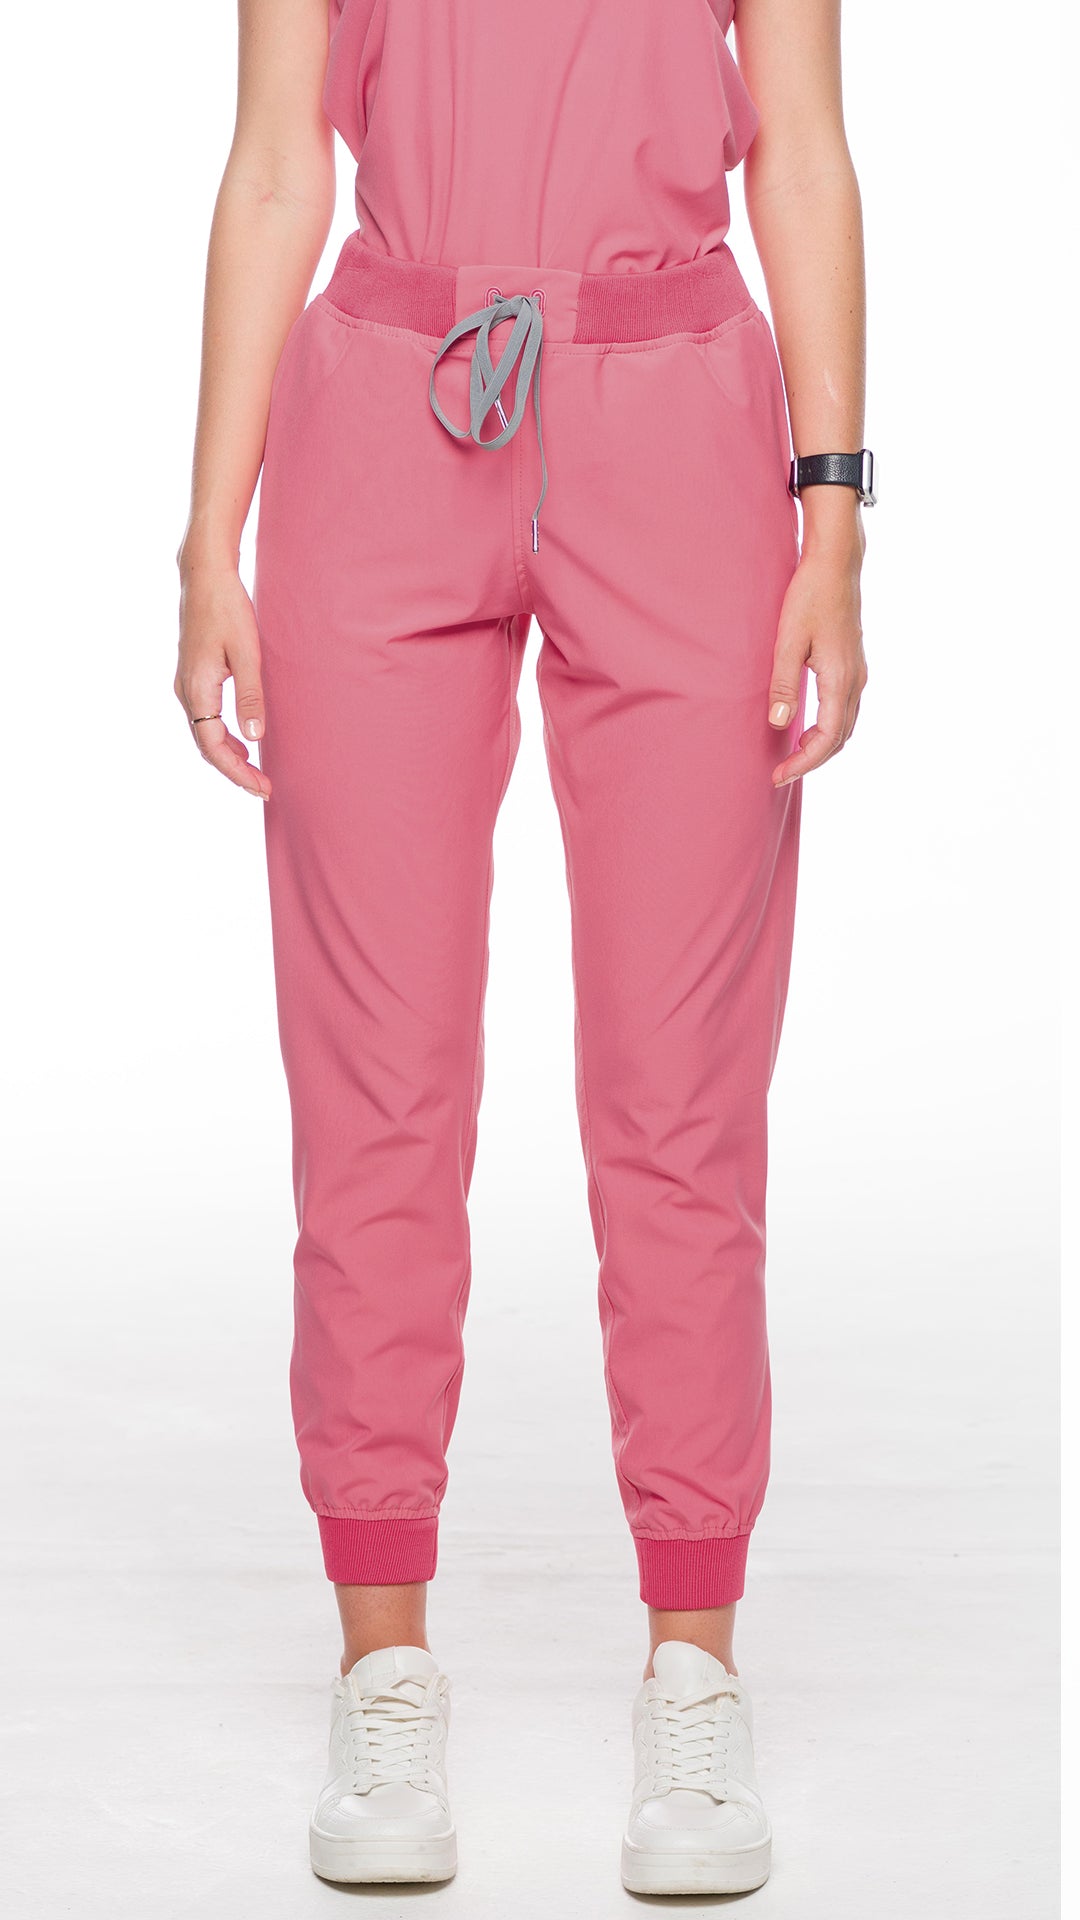 Kanaus® Pants Casual Paradise Pink | Women